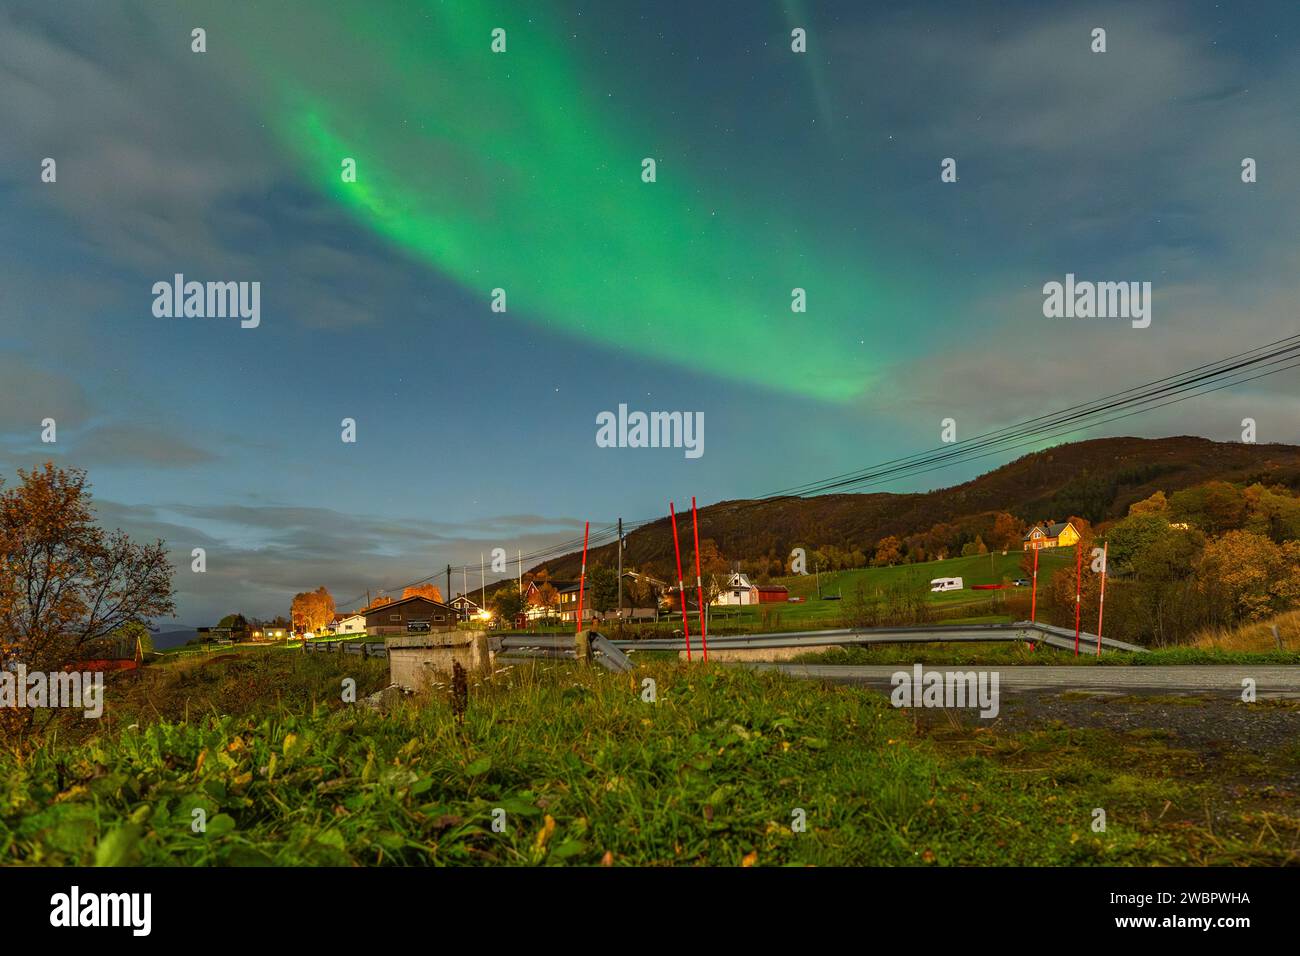 Hermosas luces verdes del norte sobre un fiordo y una casa en la isla de Kvaloya cerca de Tromsø. bailando luces polares sobre una montaña, aurora boreal Foto de stock